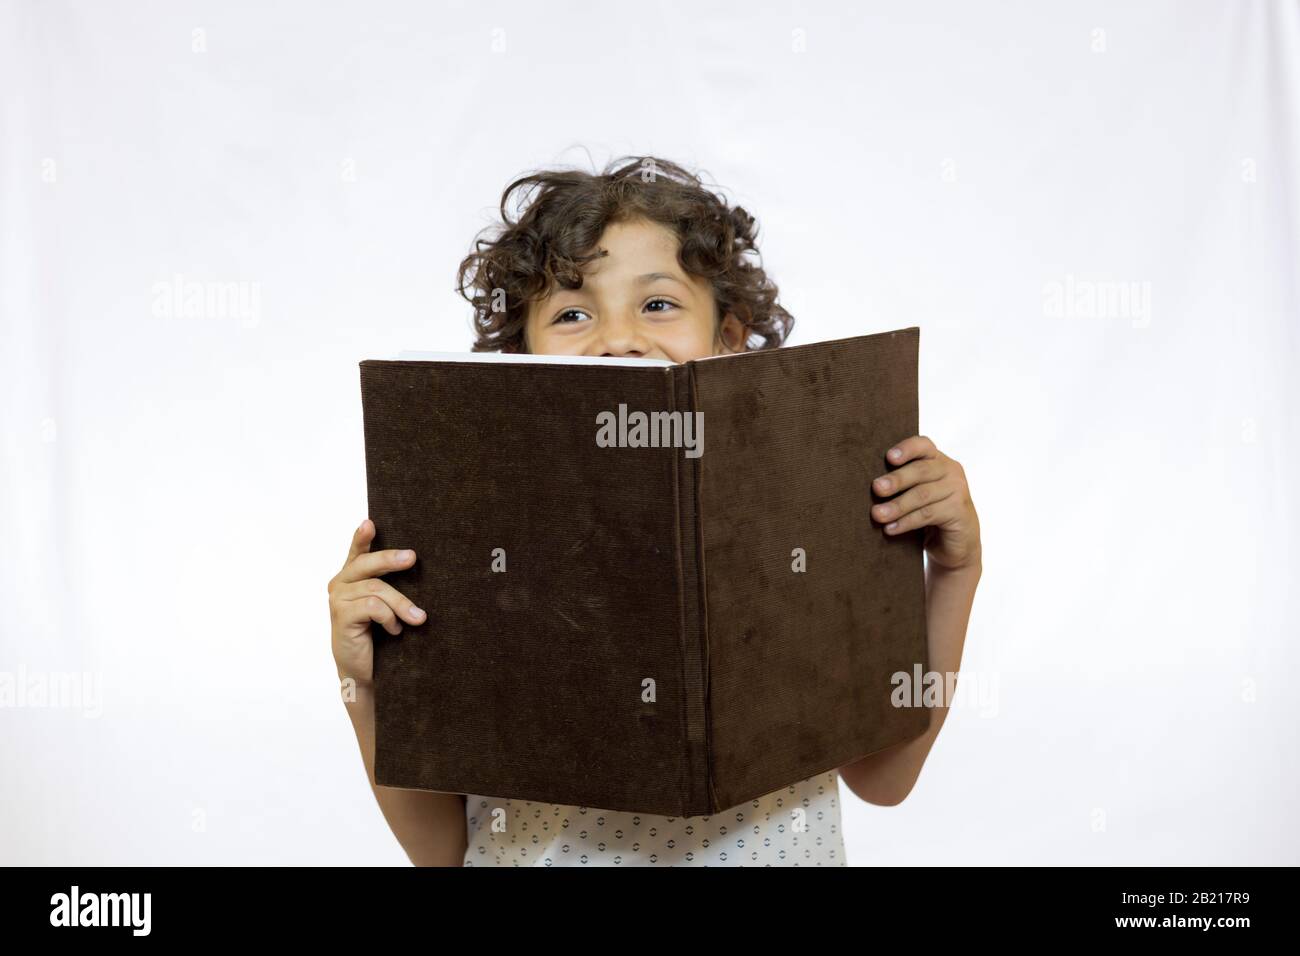 Lächelnder Junge zwischen 8 und 9 Jahren, der ein Buch hält, während er es liest und vor weißem Hintergrund steht Stockfoto